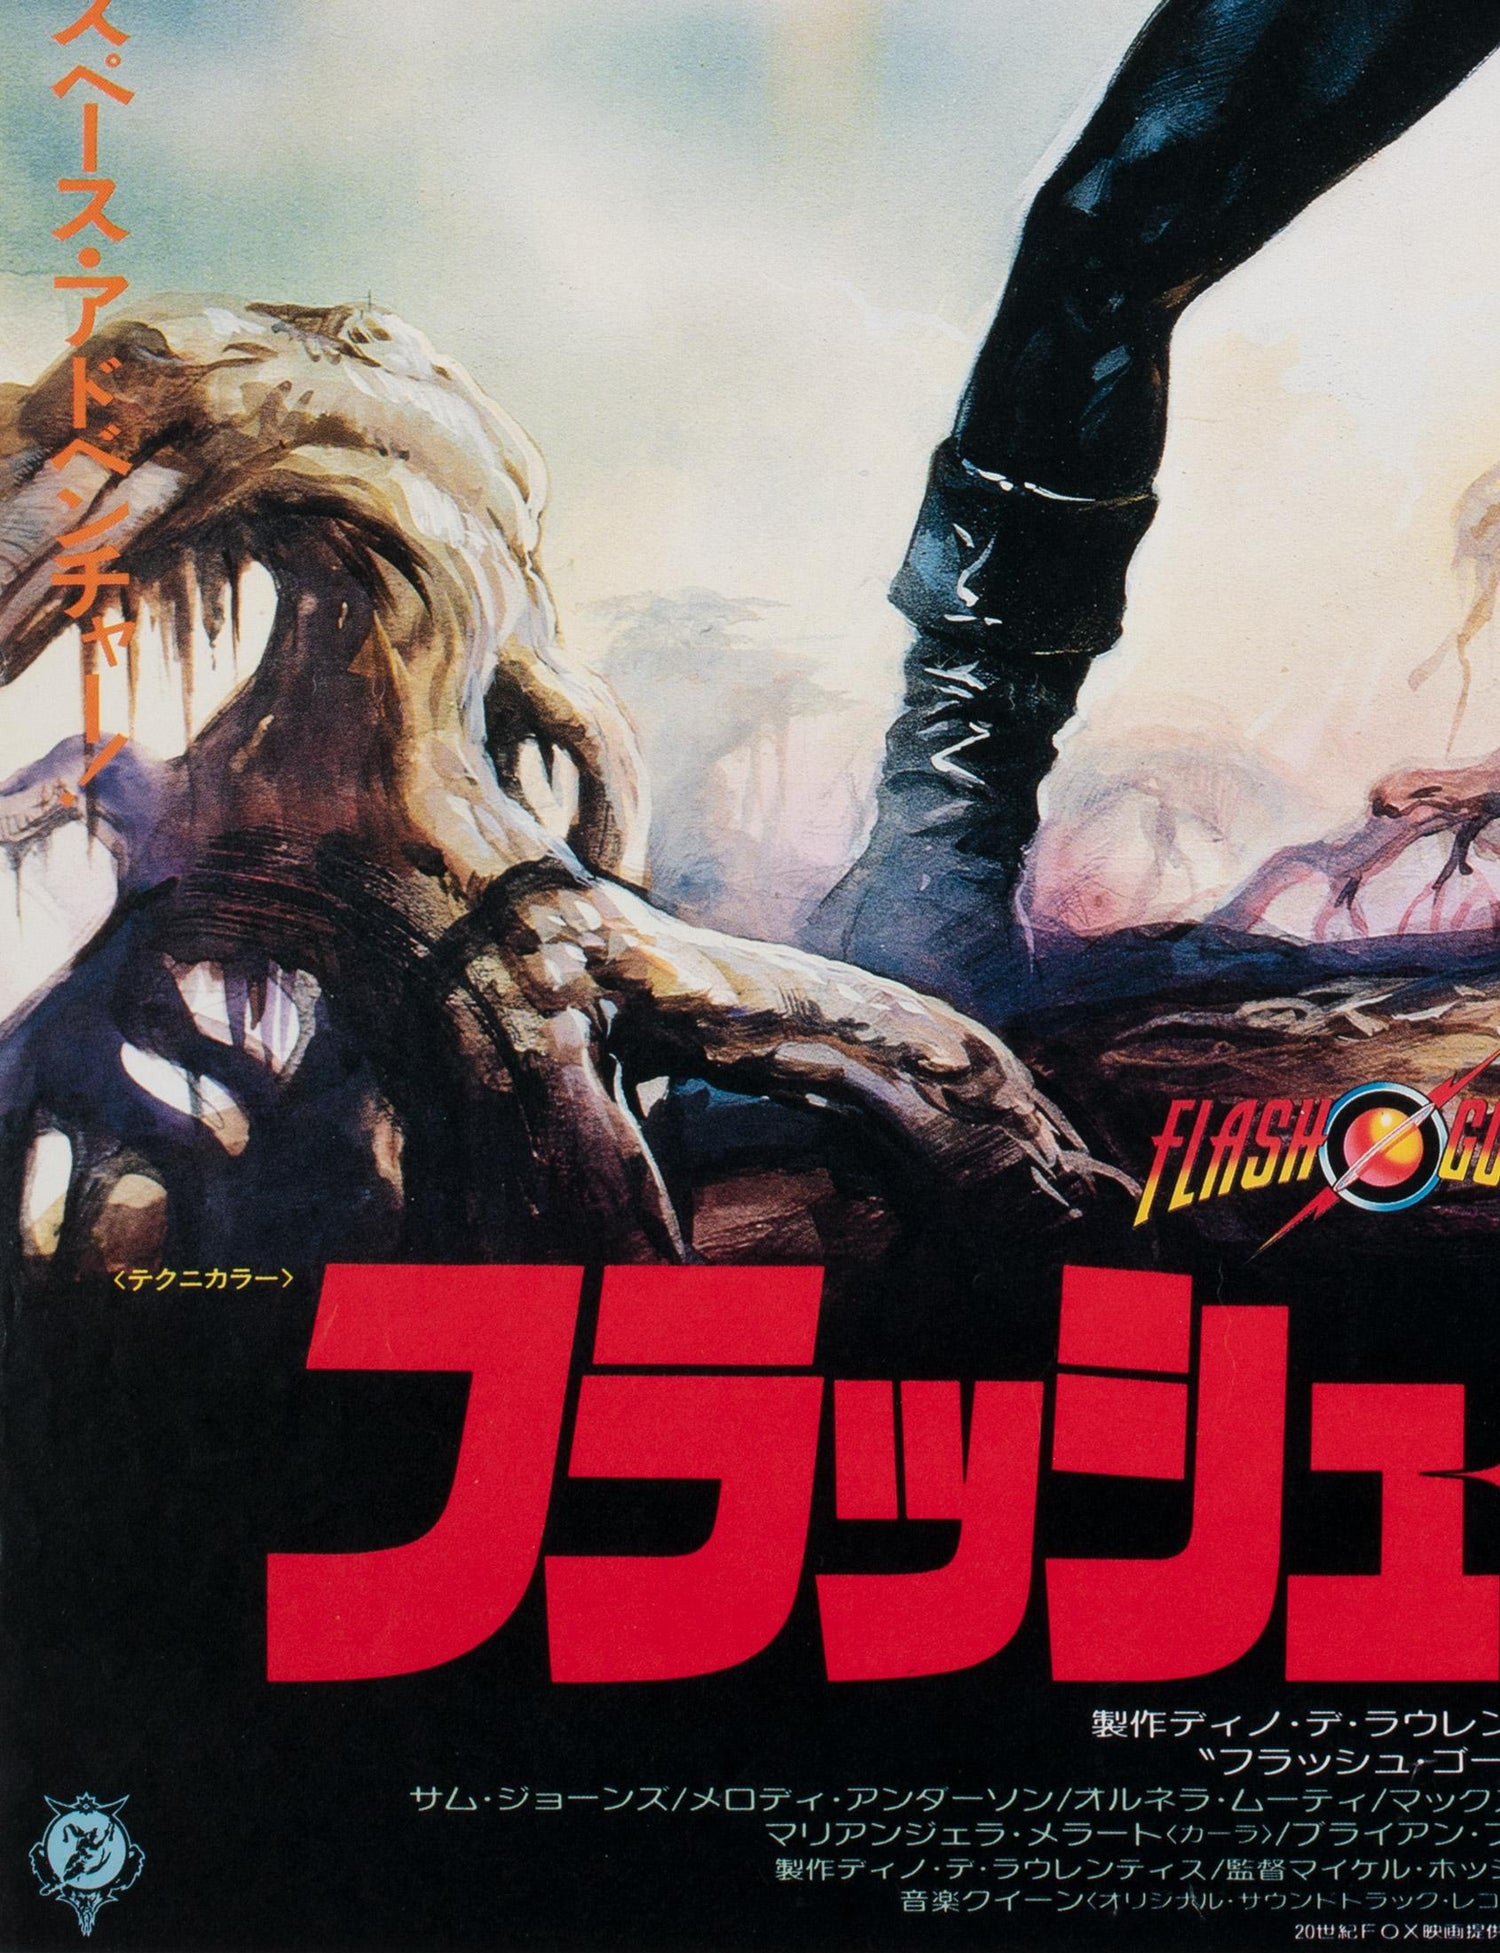 Flash Gordon Japanese Film Movie Poster 1981 Casaro At 1stdibs